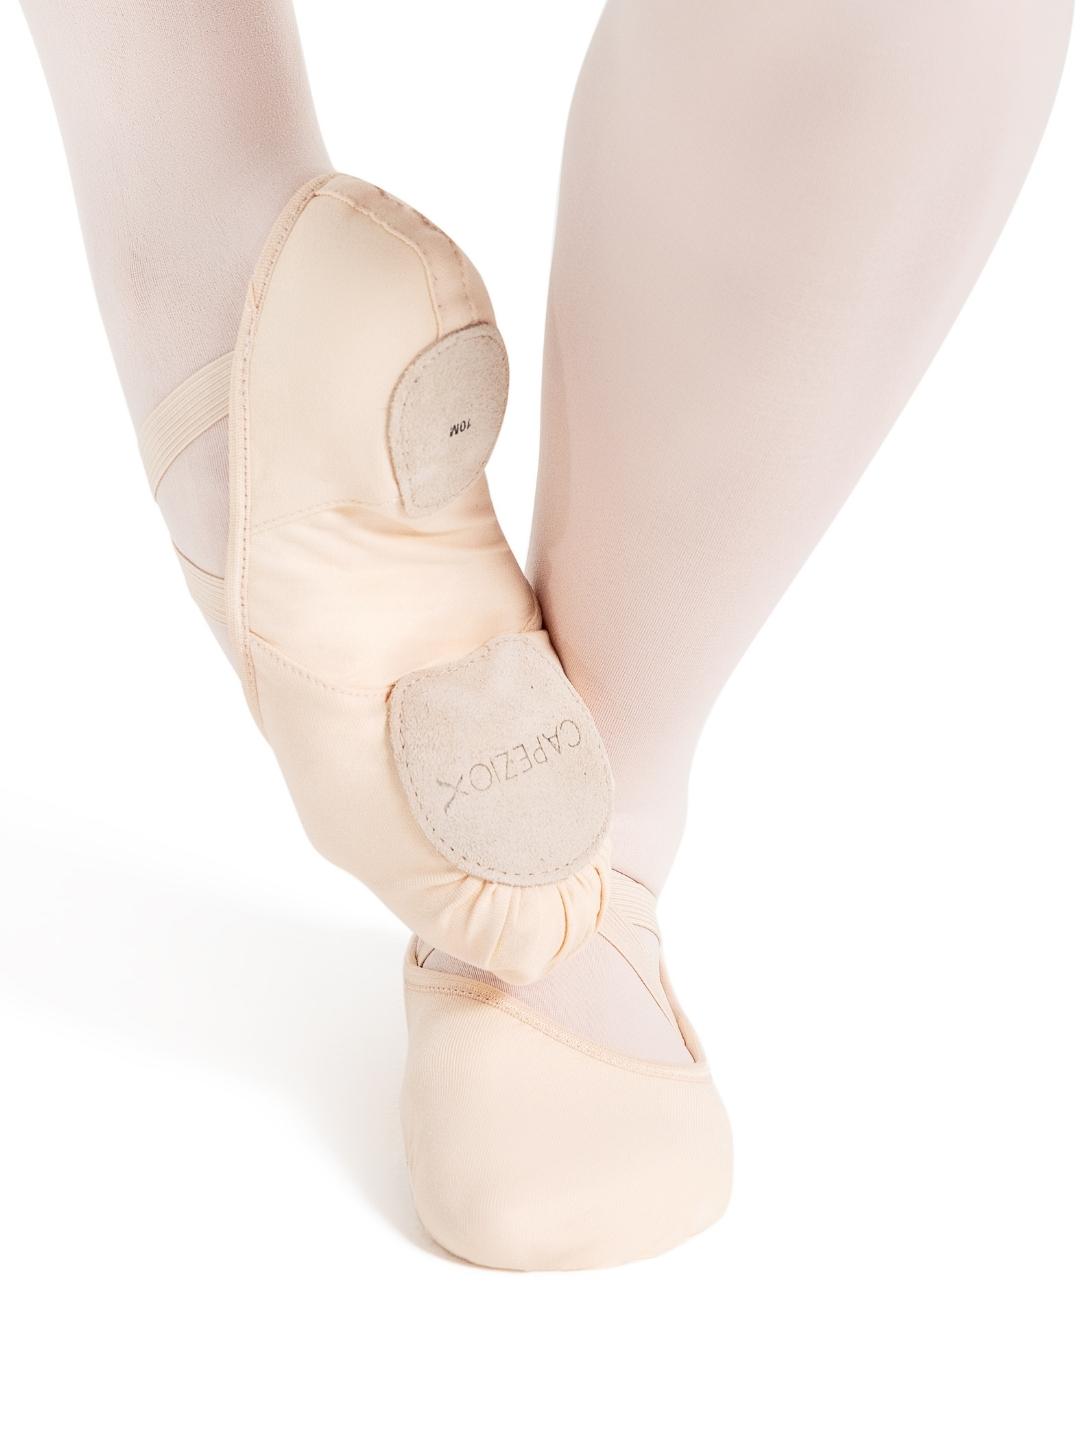 Capezio Hanami Ballet Shoe Light Pink 2037W
